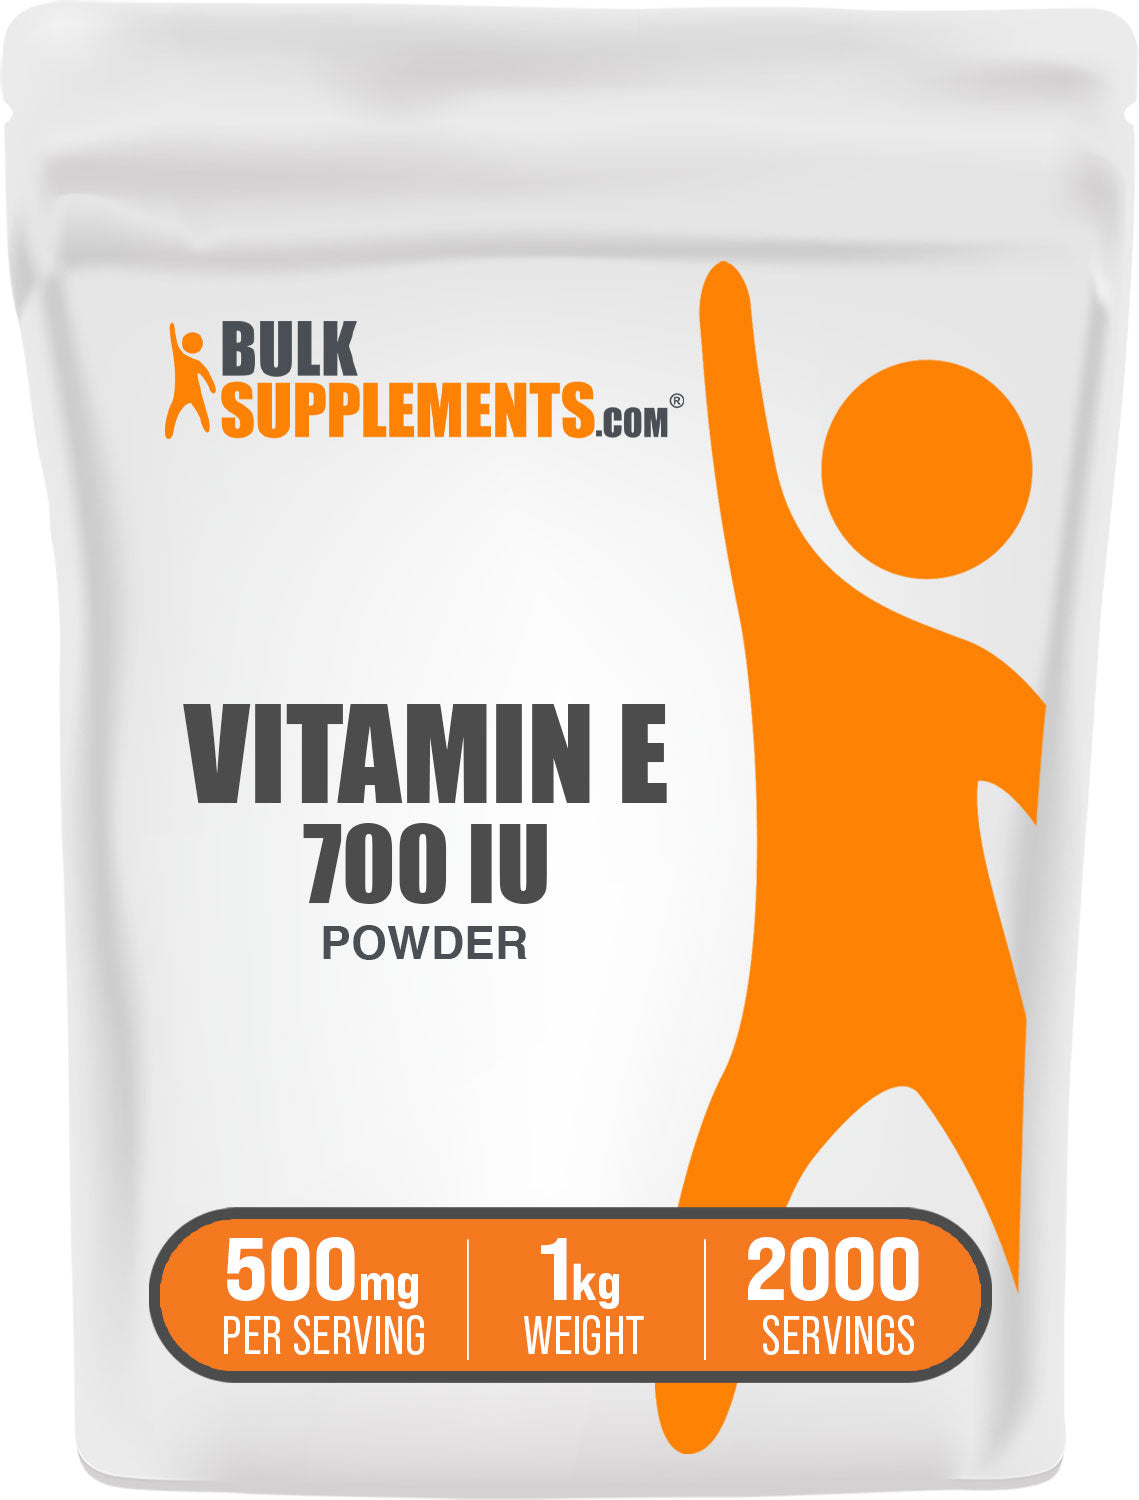 BulkSupplements.com Vitamin E 700 IU Powder 1kg bag